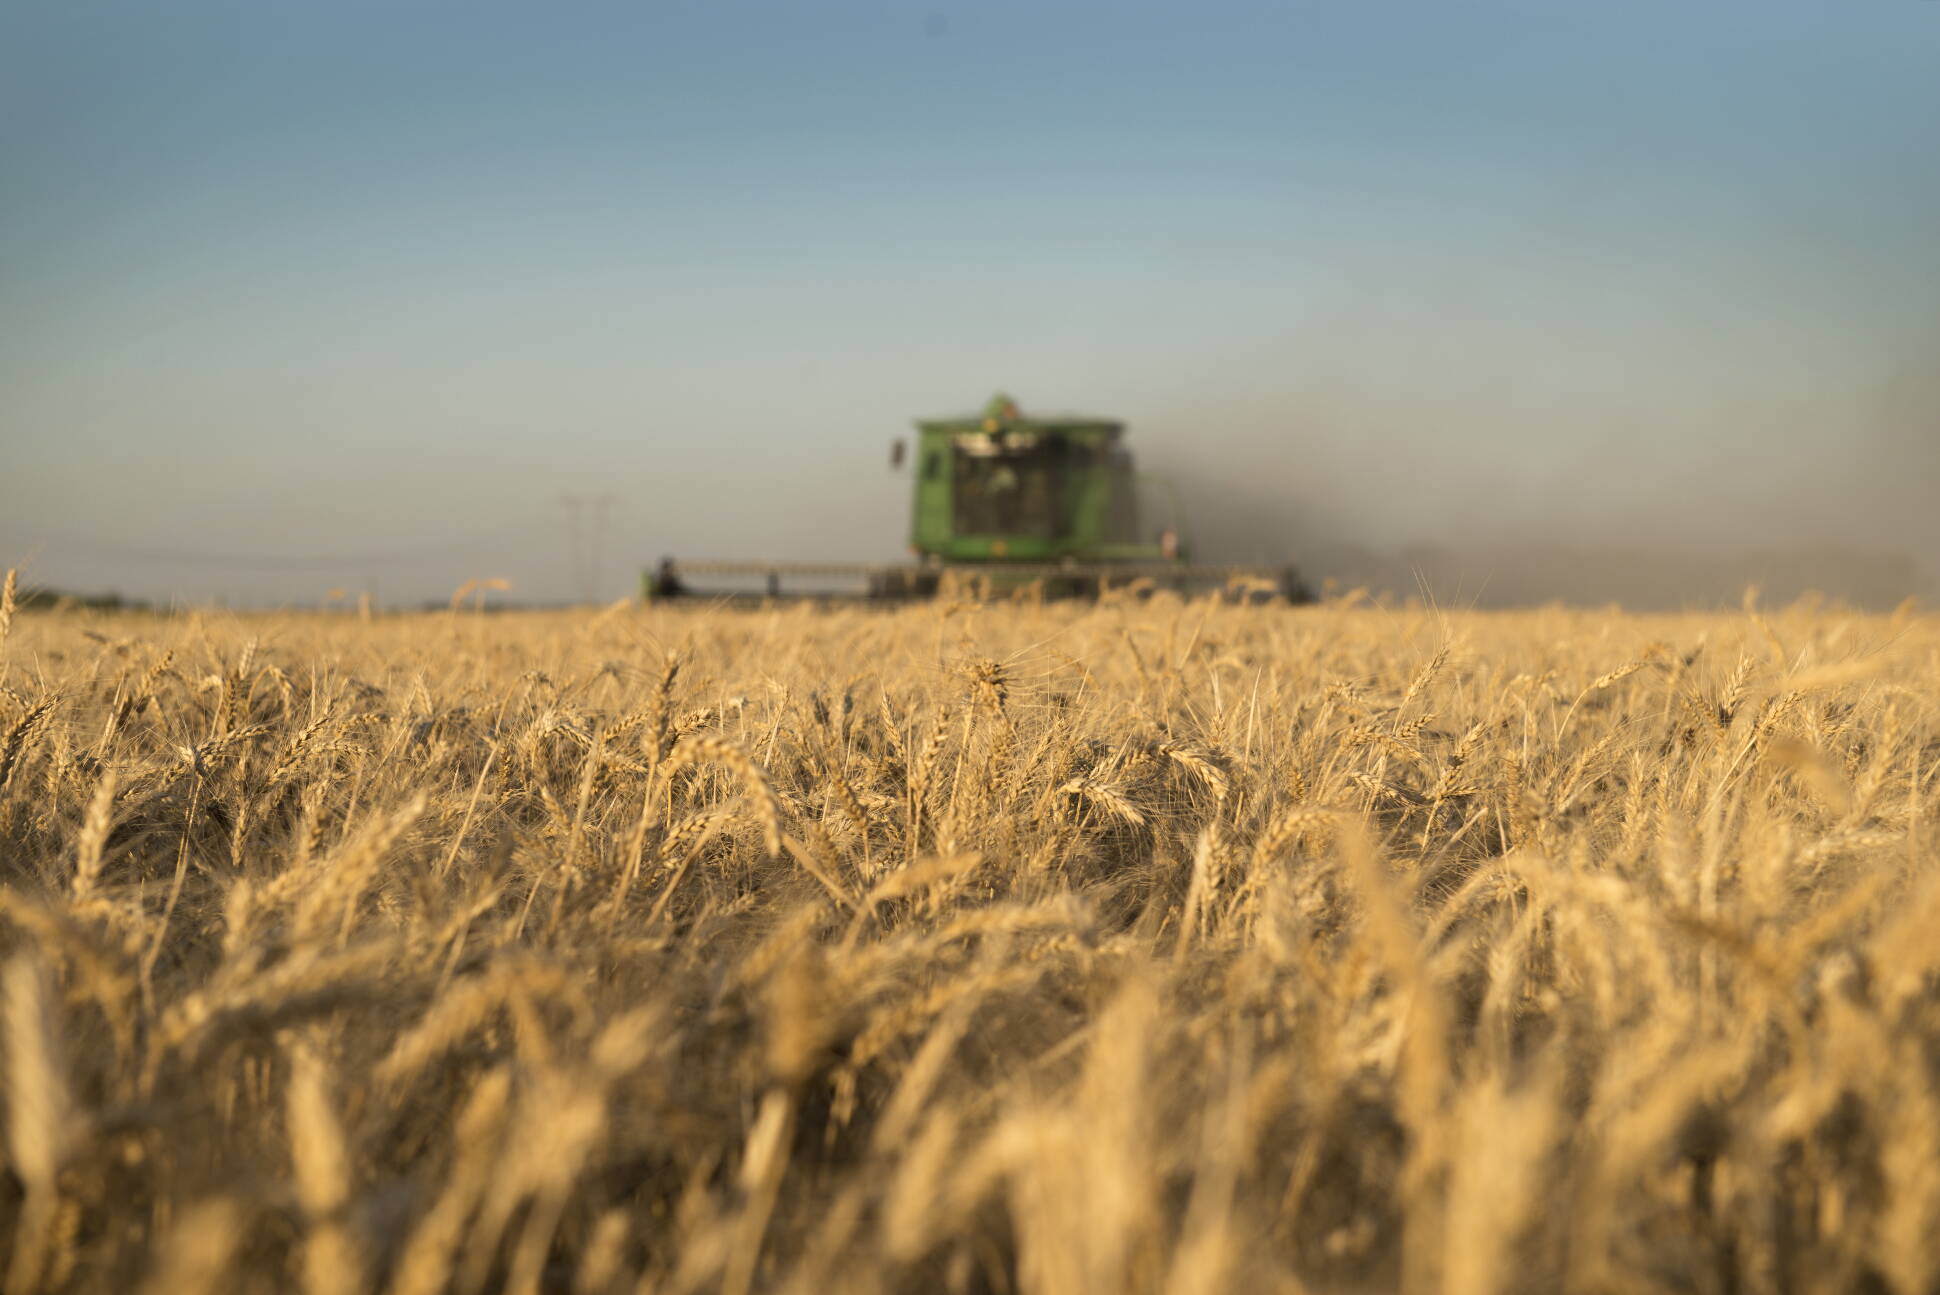 La superficie sembrada de trigo aumentó 20 por ciento para la campaña 2016/17